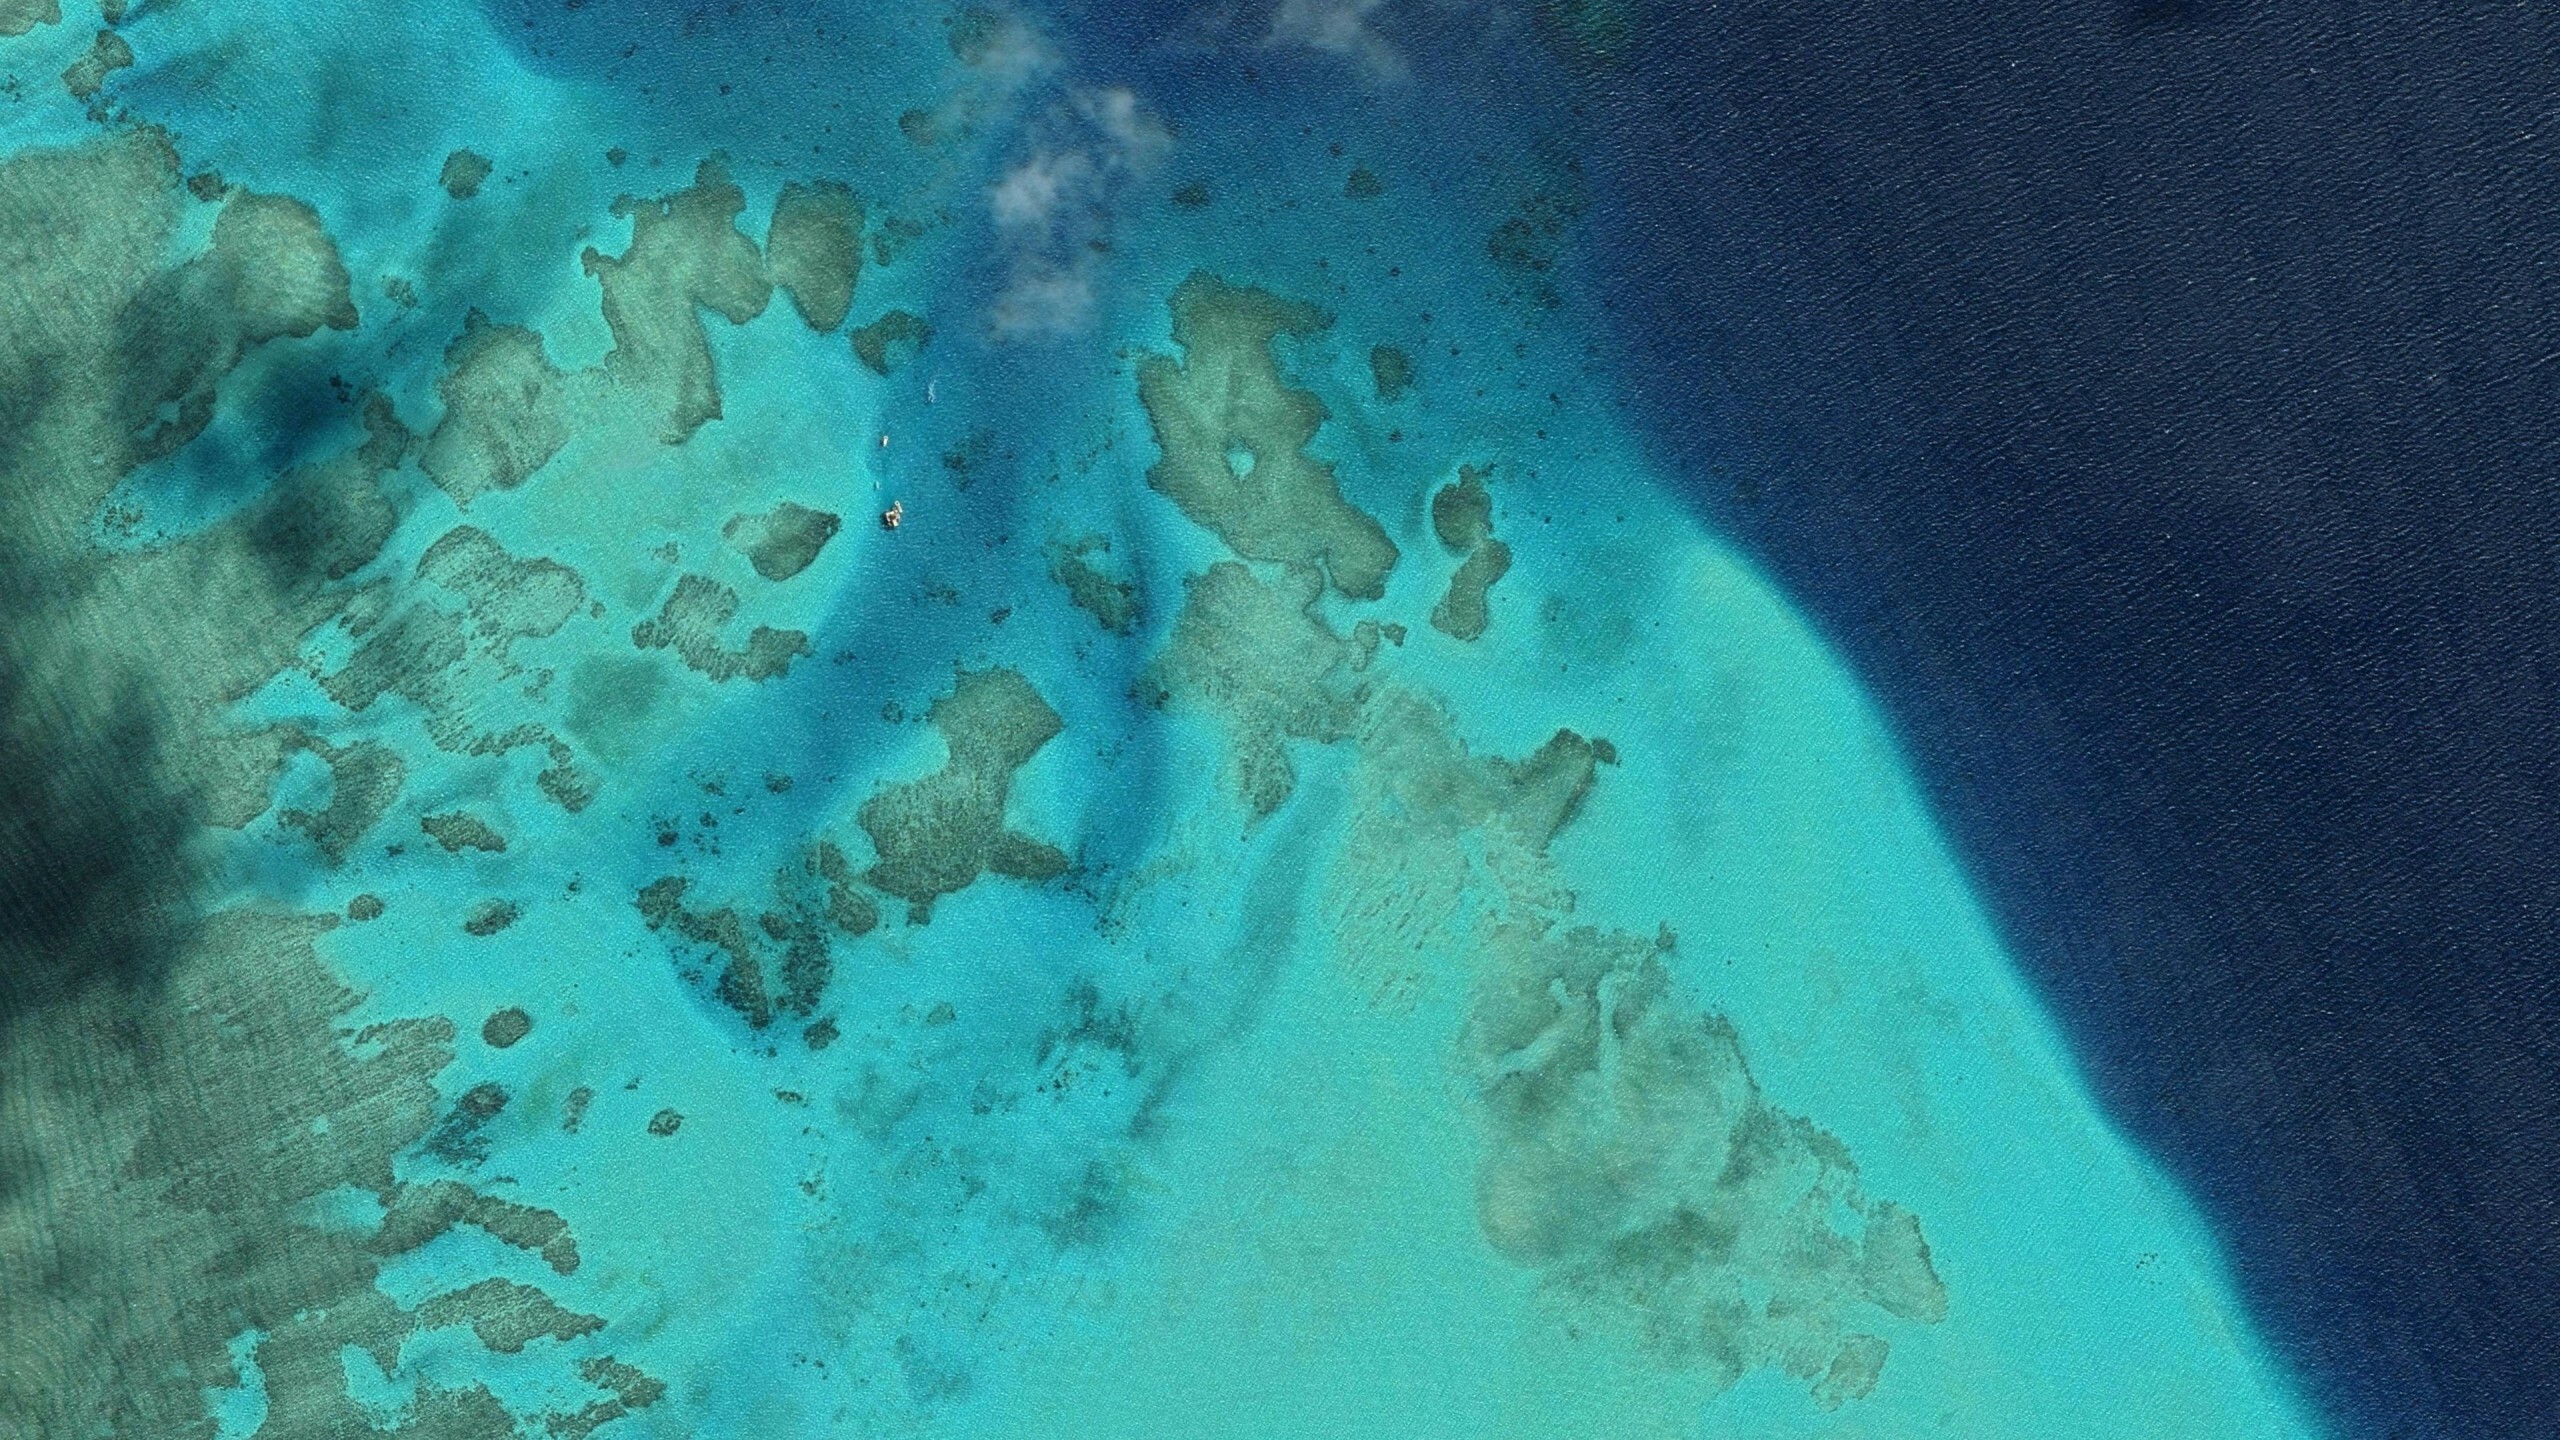 Great Barrier Reef: Malolo, Coral reefs, Oceania. 2560x1440 HD Wallpaper.